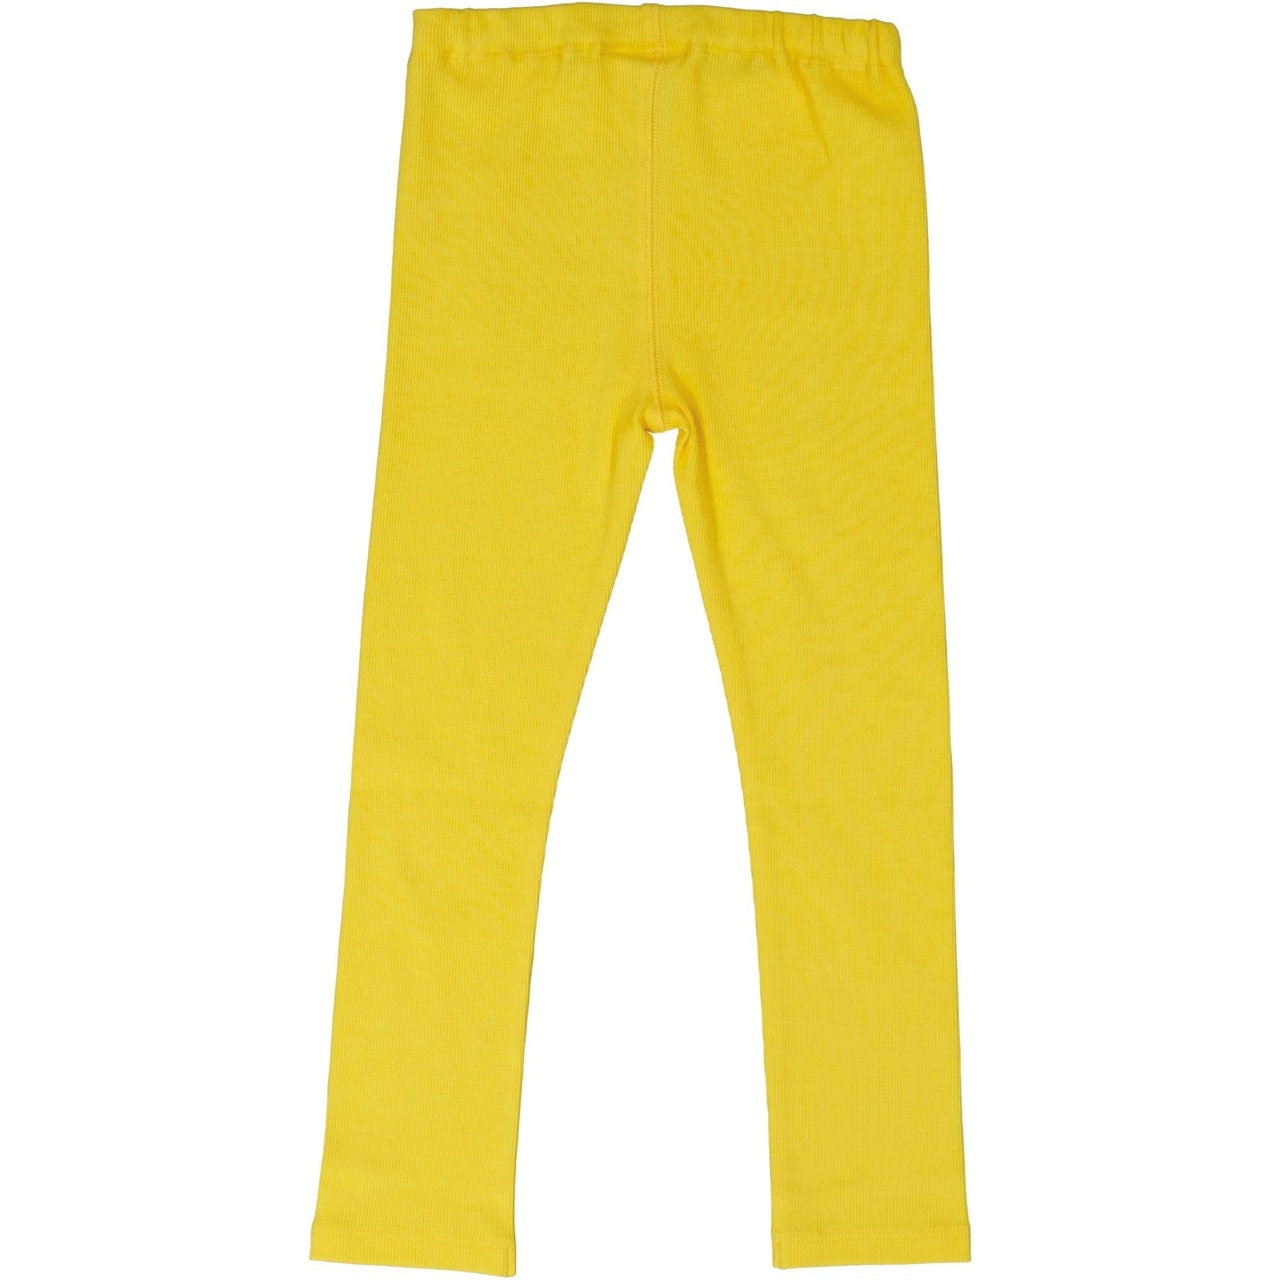 Leggings Yellow  146/152